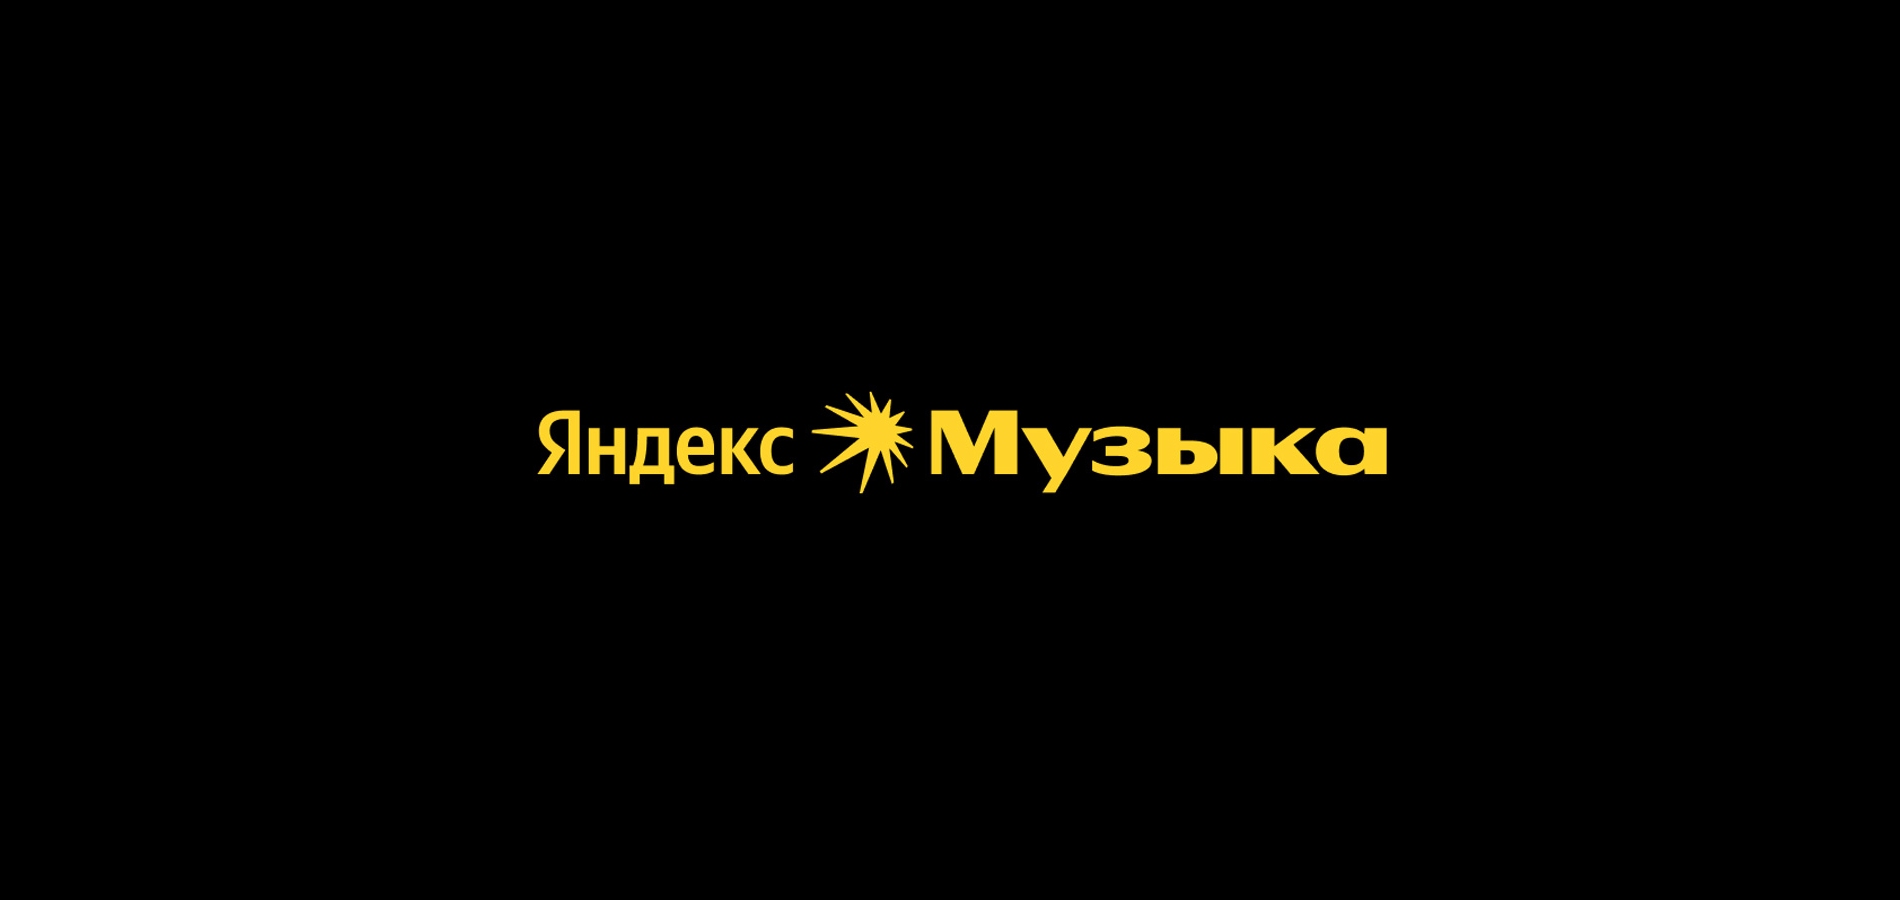 В Яндекс Музыке впервые за девять лет обновился дизайн